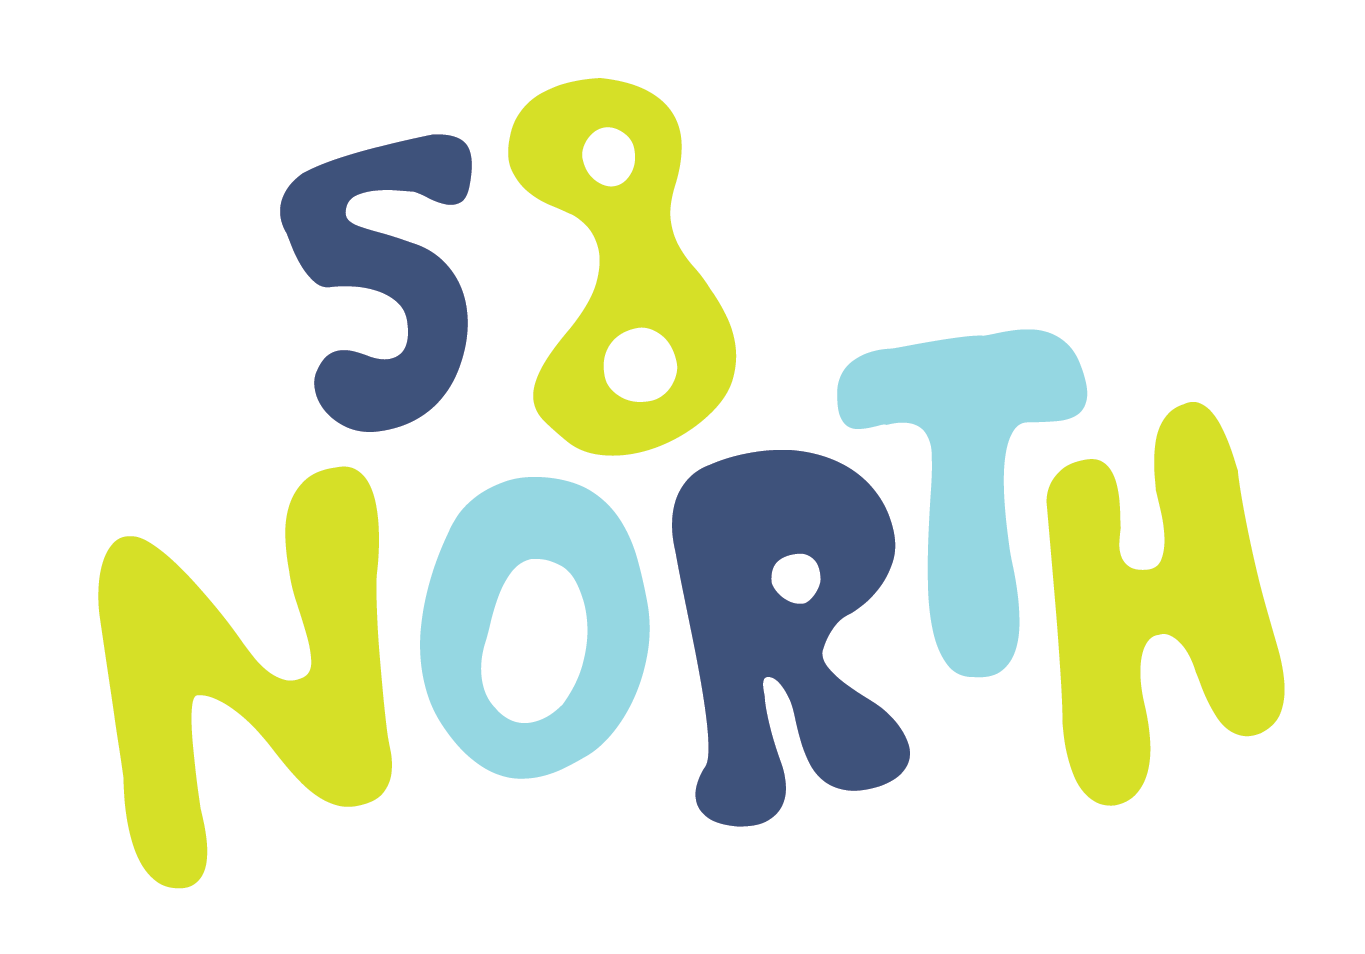 58 North